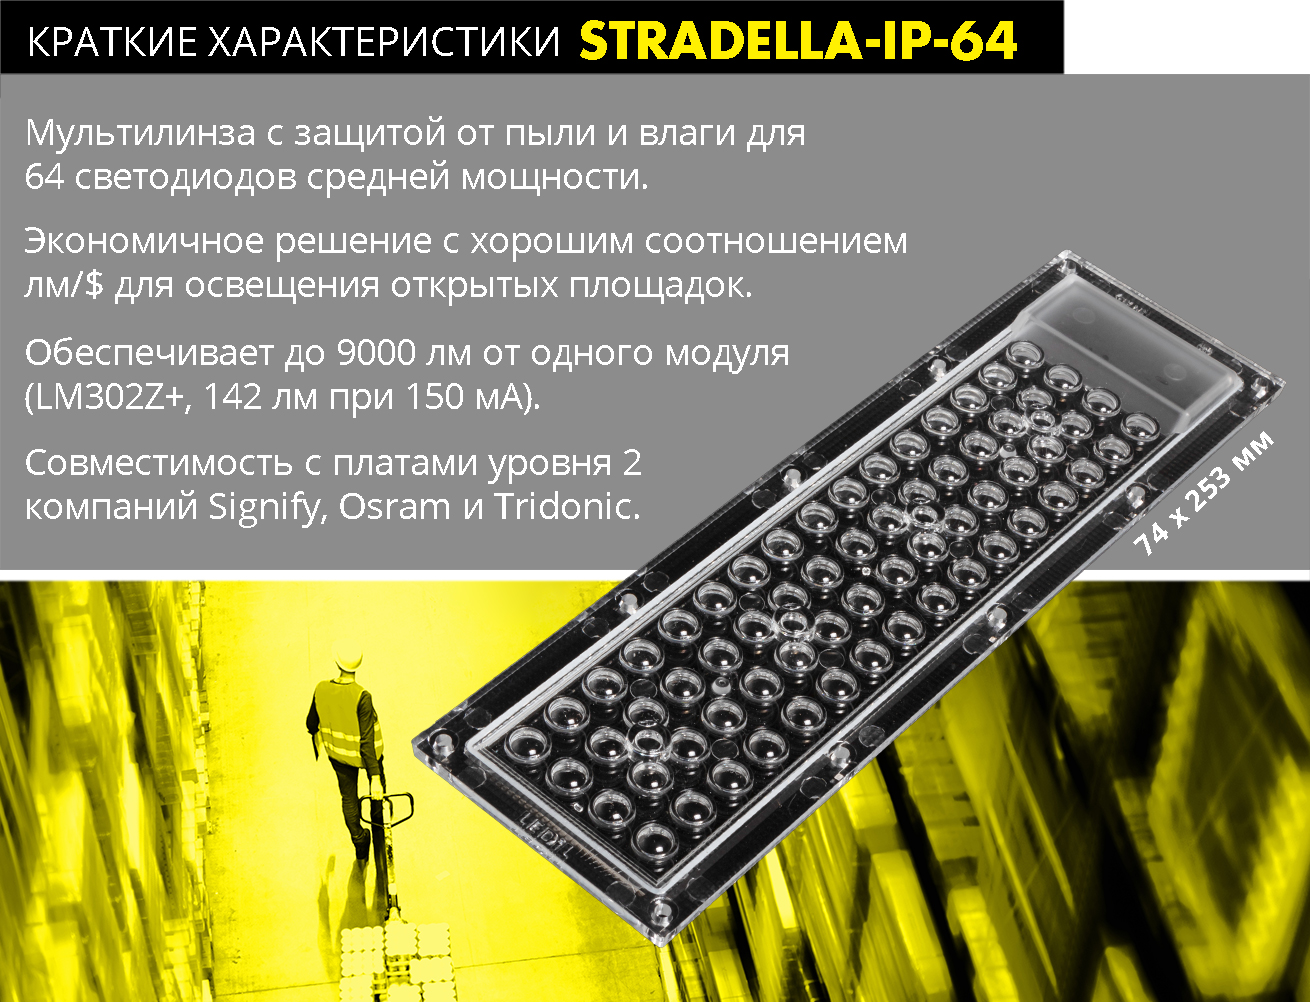 STRADELLA-IP-64 in nutshell